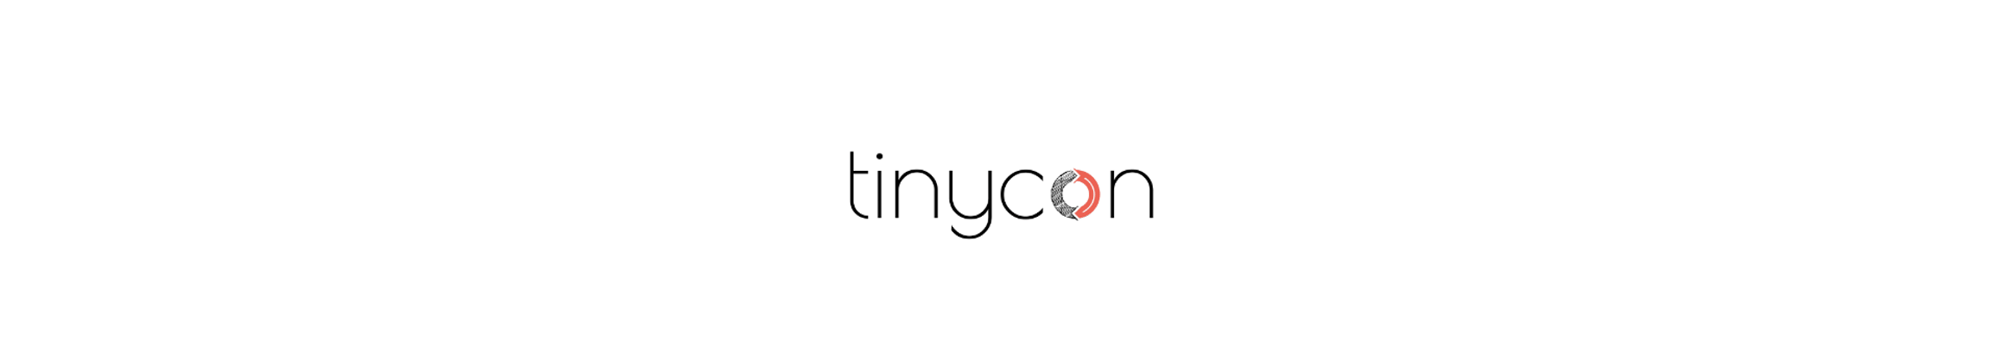 tinycon2-1